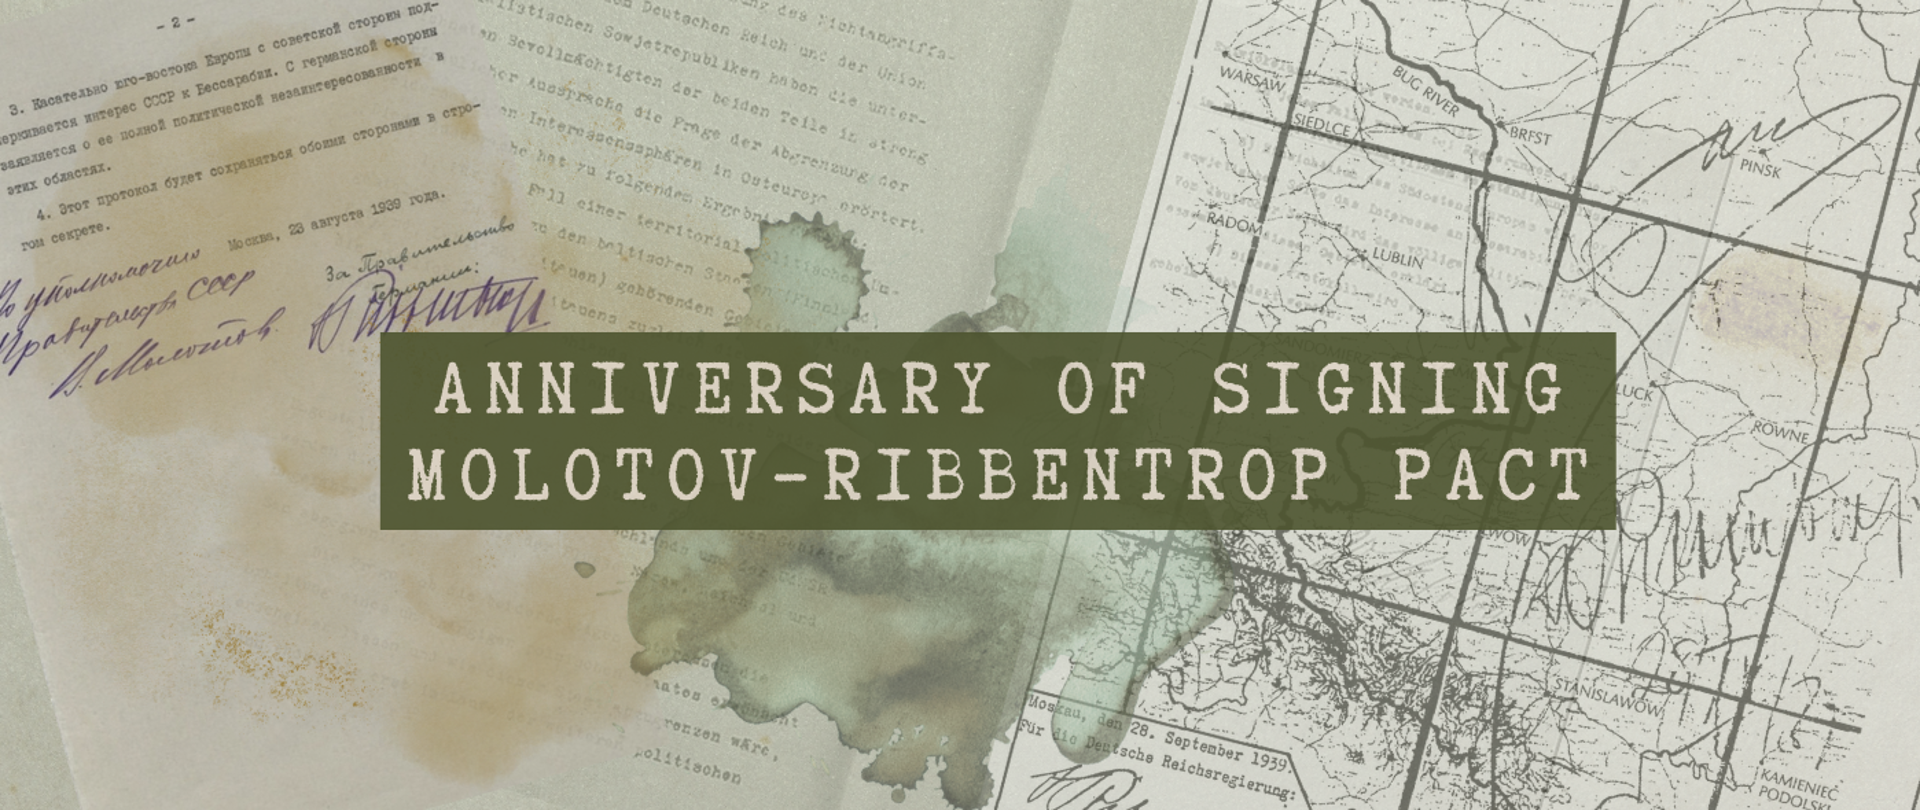 Anniversary of signing Molotov-Ribbentrop Pact